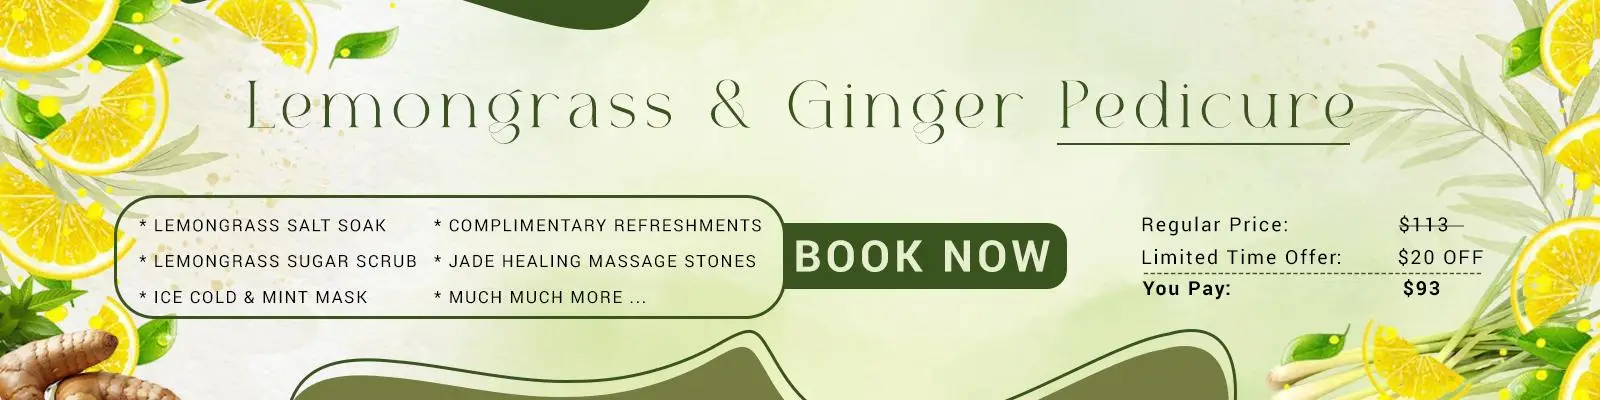 Lemongrass Ginger Pedicure 1